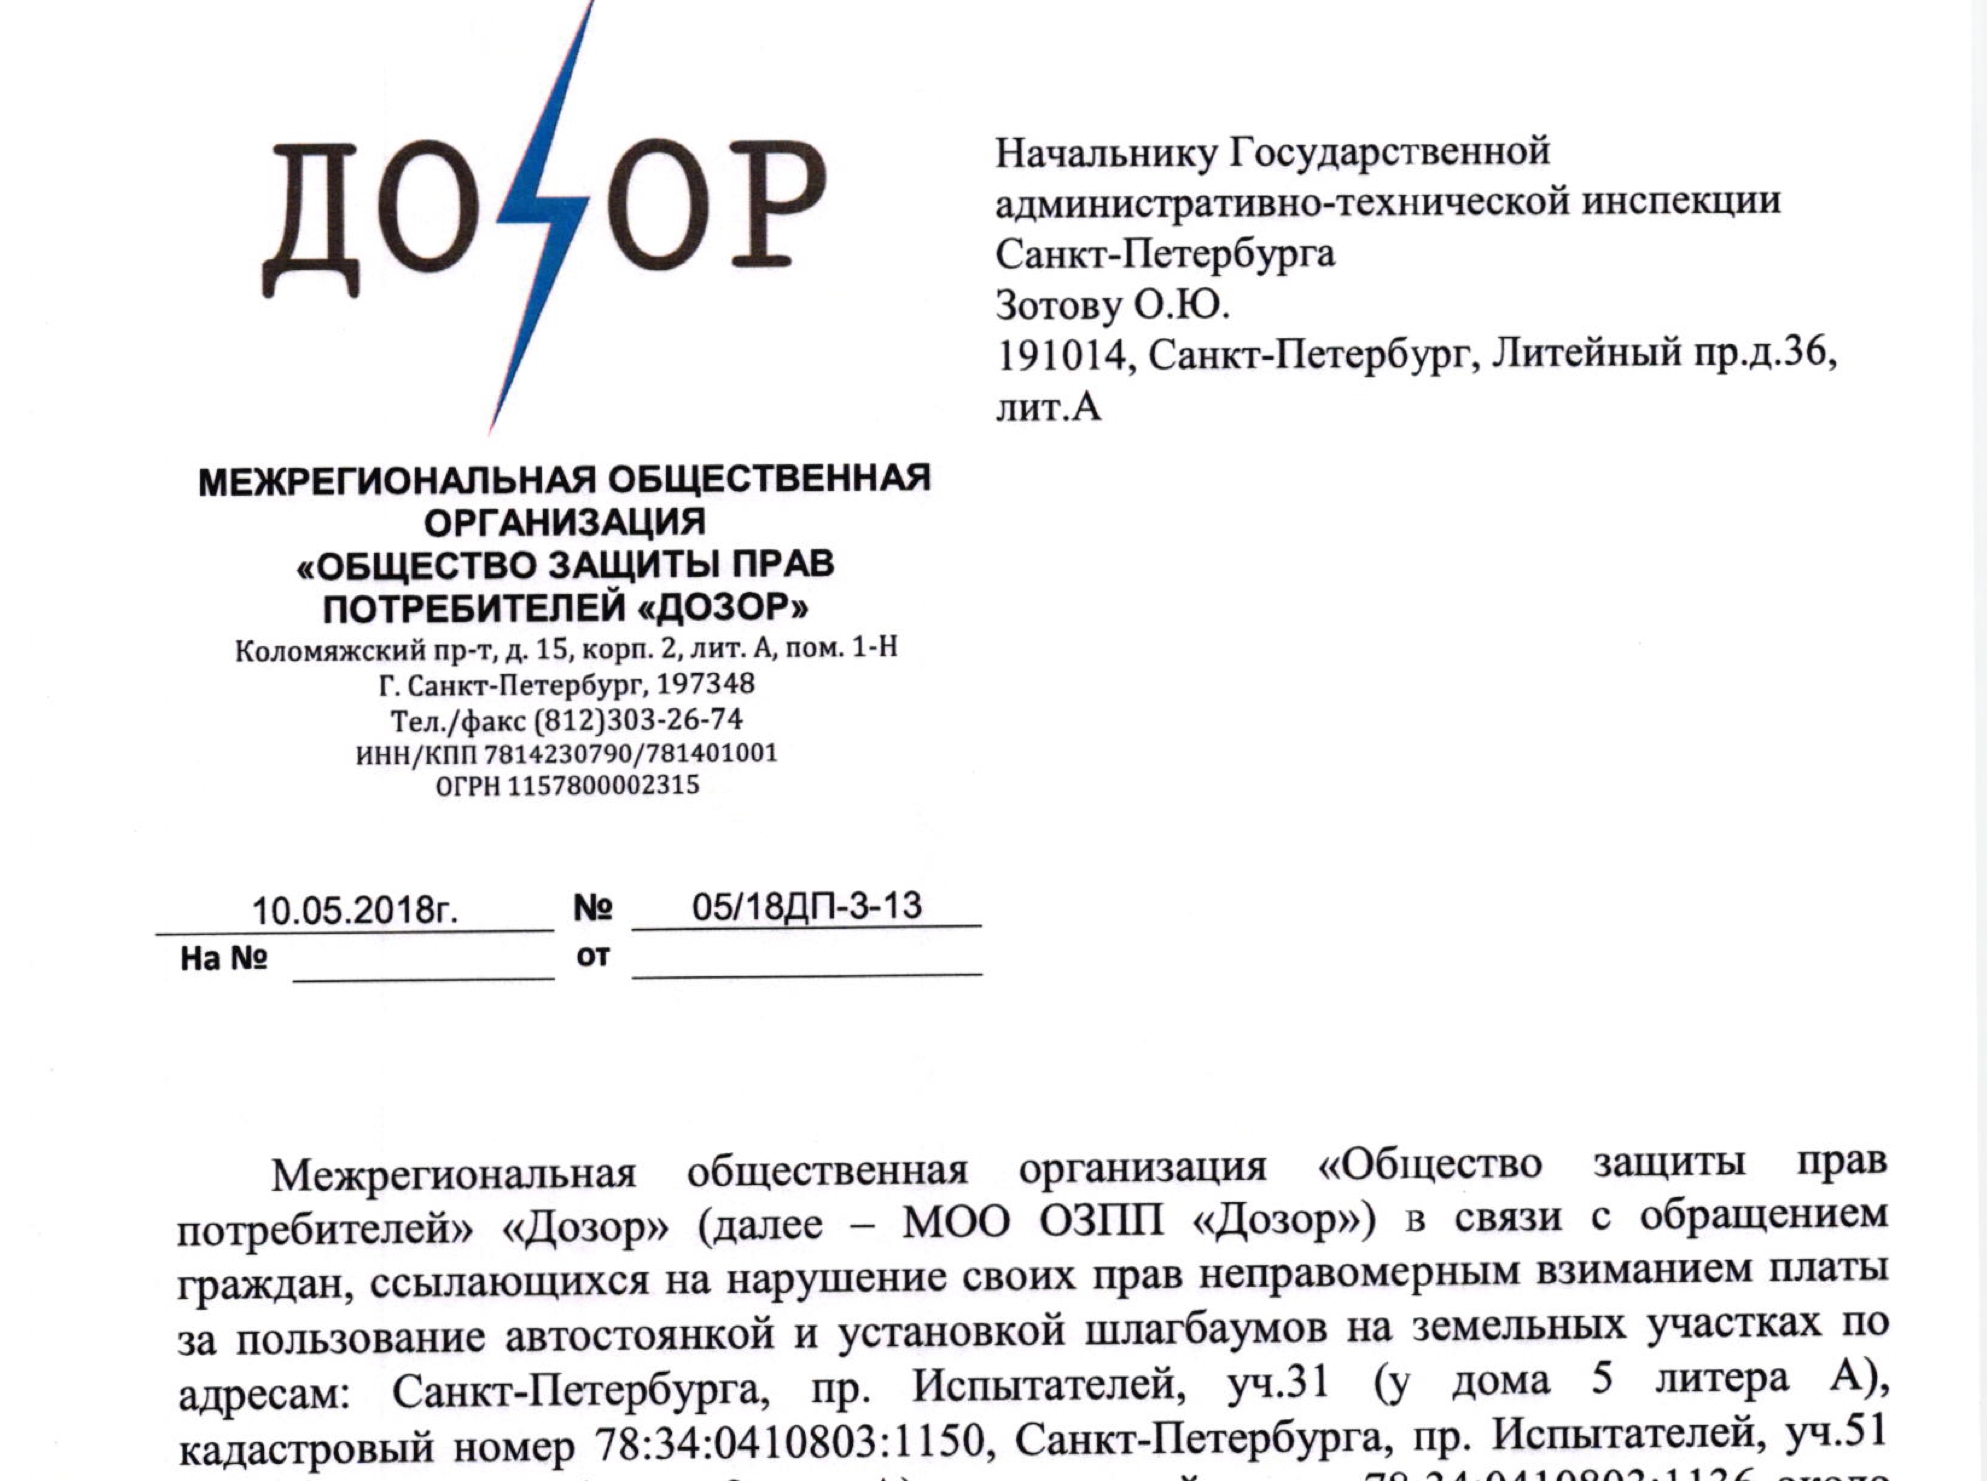 Заявление в ГКУ “Имущество Санкт-Петербурга” в связи с обращениями граждан ссылающихся на нарушение их прав неправомерным взыманием платы на парковке около ТЦ “Сити Молл”